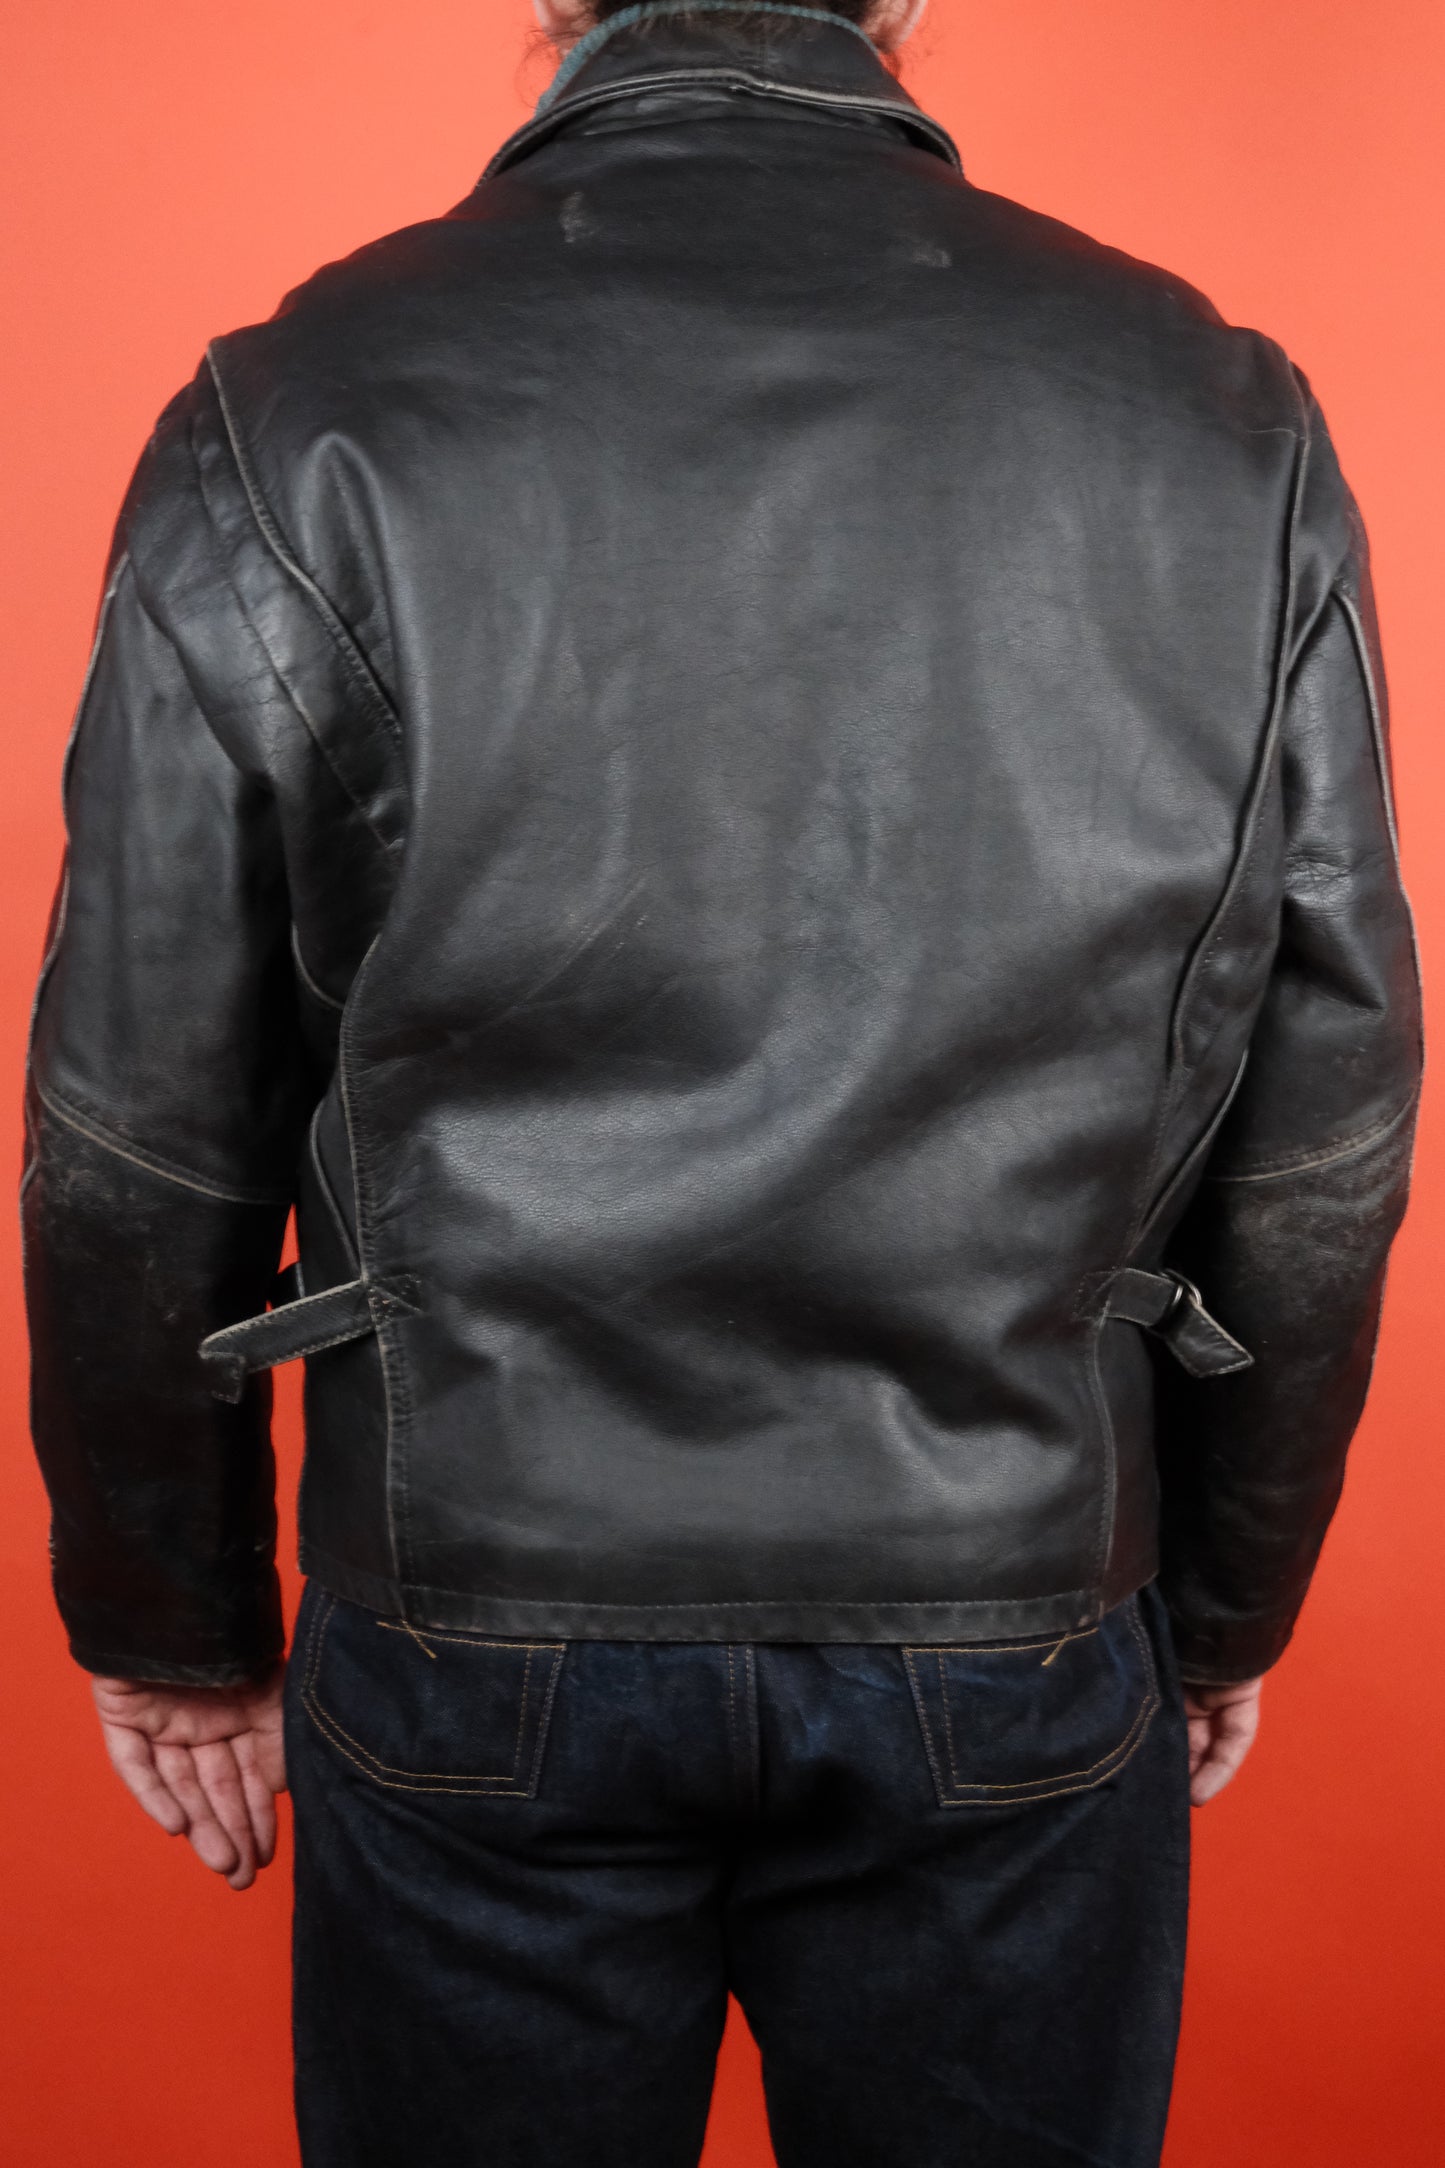 Rifle & Co. Black Leather Jacket 'M' - vintage clothing clochard92.com